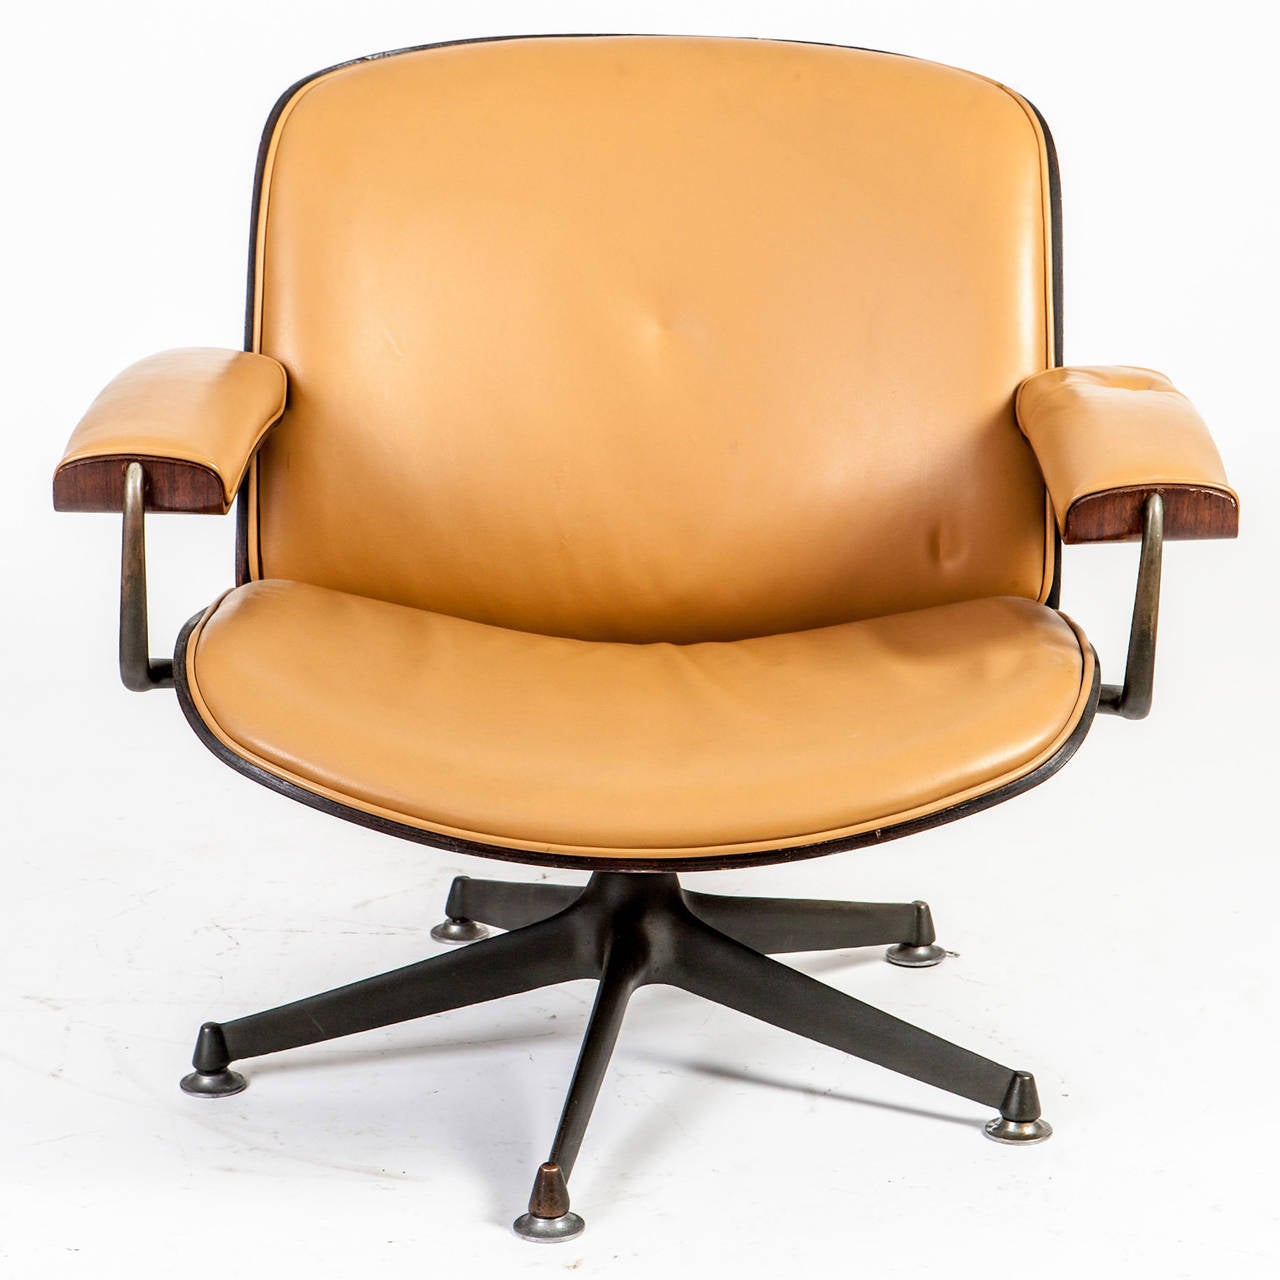 Schöner und bequemer italienischer Midcentury-Sessel:: entworfen von Ico Parisi für MIM Roma in den 1950er Jahren. Er verfügt über eine Palisander-furnierte Sitzschale und eine erneuerte cognacfarbene Lederpolsterung auf einem fünfsternigen